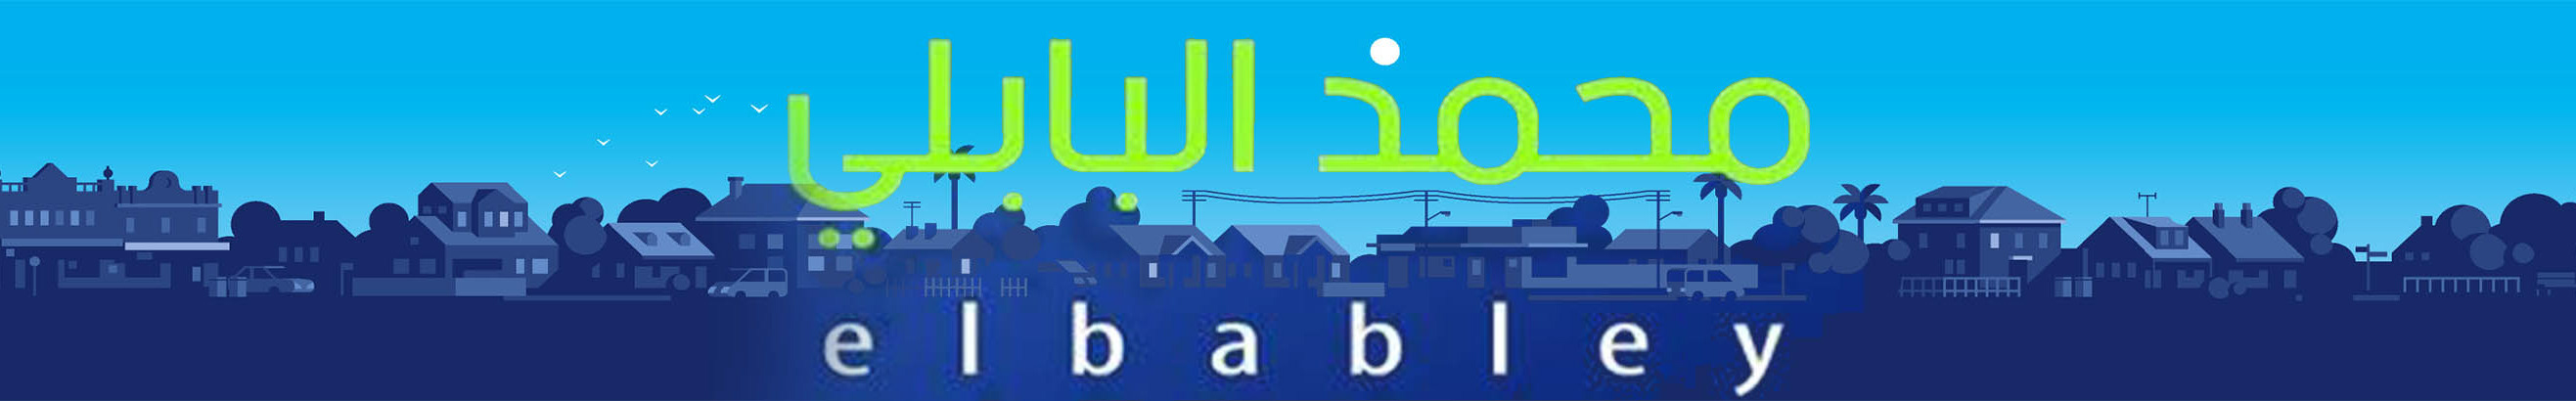 mohamed elbably's profile banner